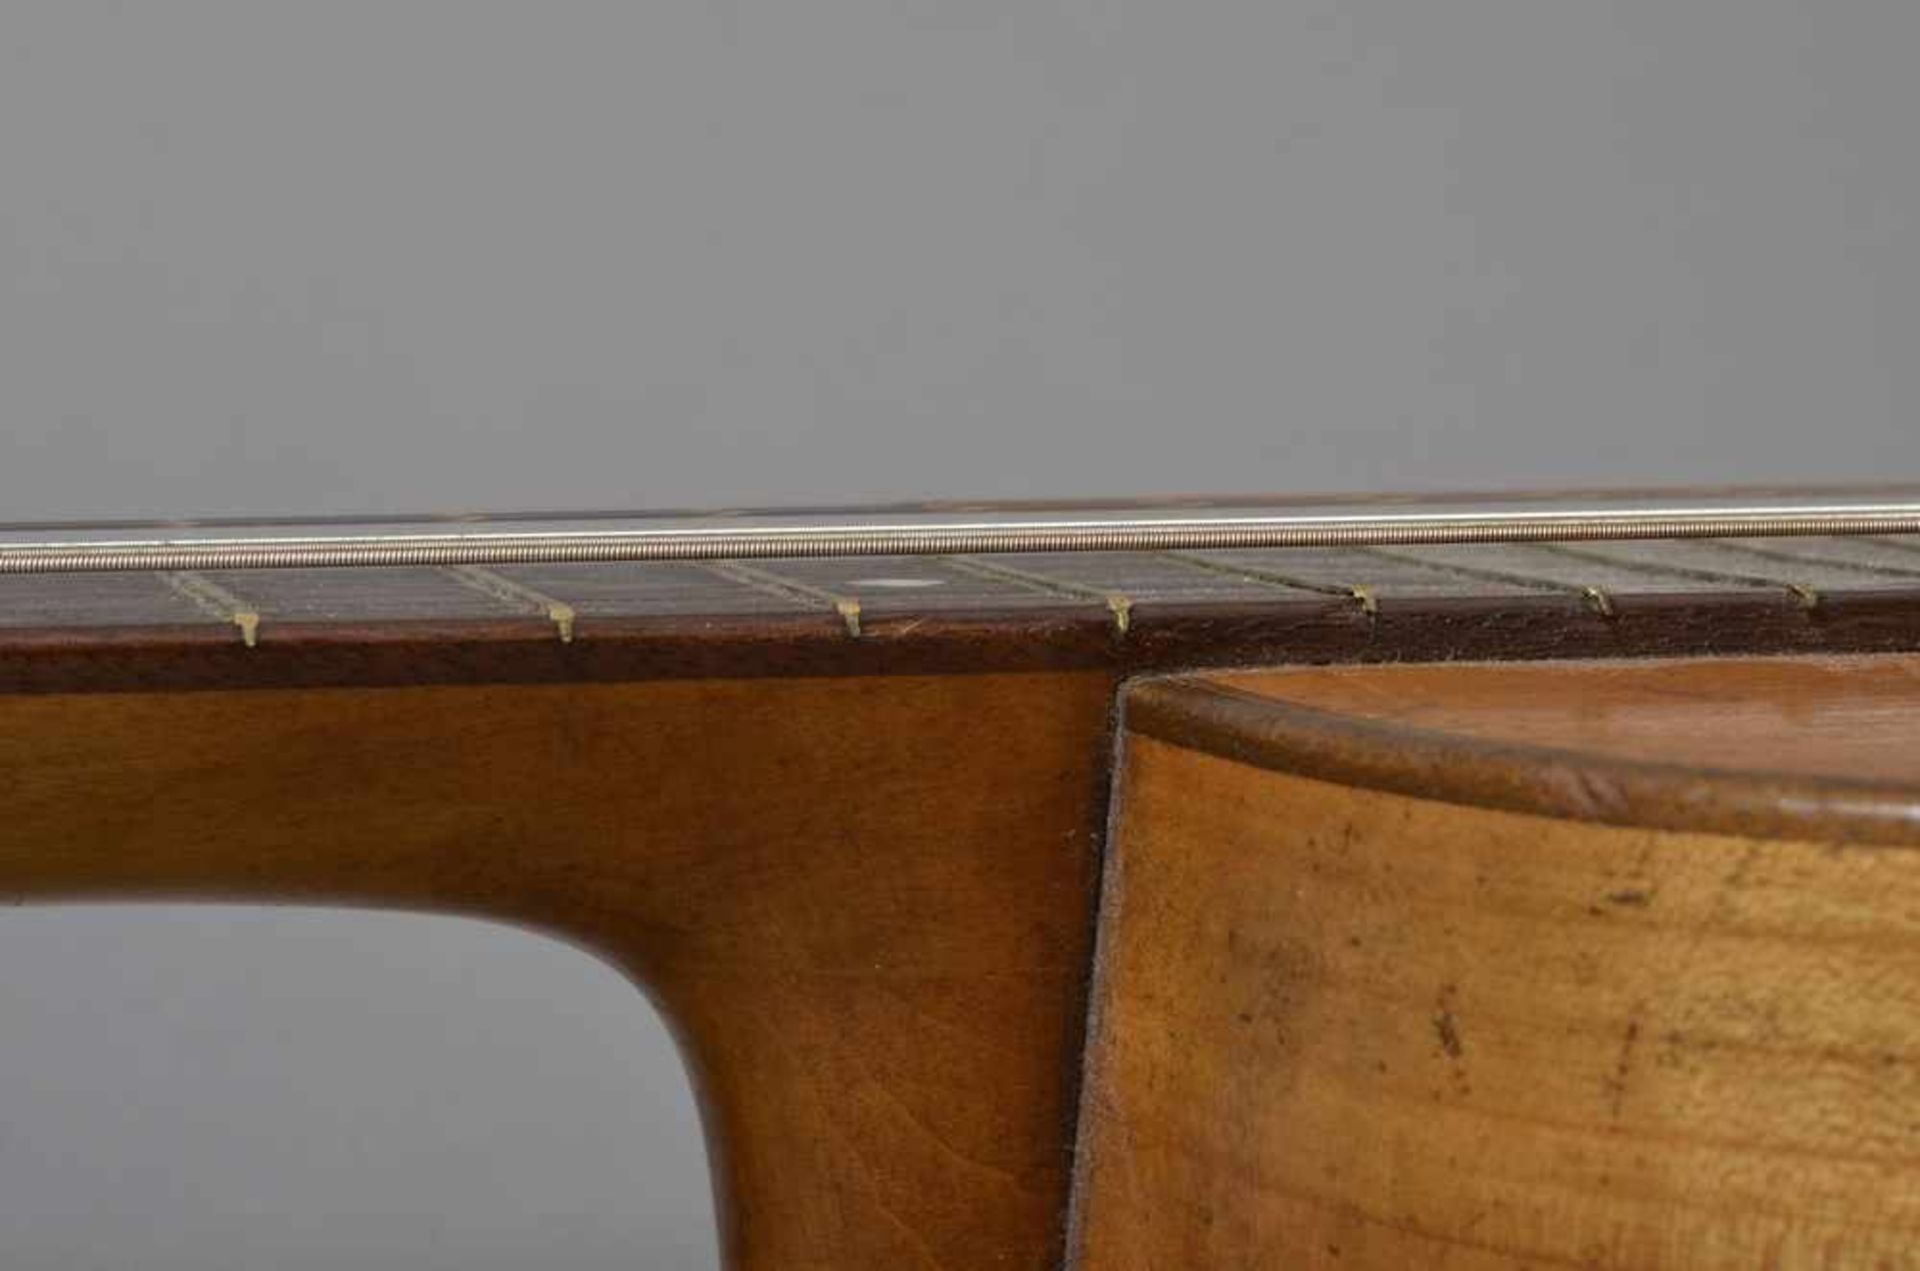 Historische Gitarre, Mensur 62cm, Gesamtlänge 93cm, Saitenhöhe 4mm, ca. 100 Jahre alt, spielbar - Bild 8 aus 8